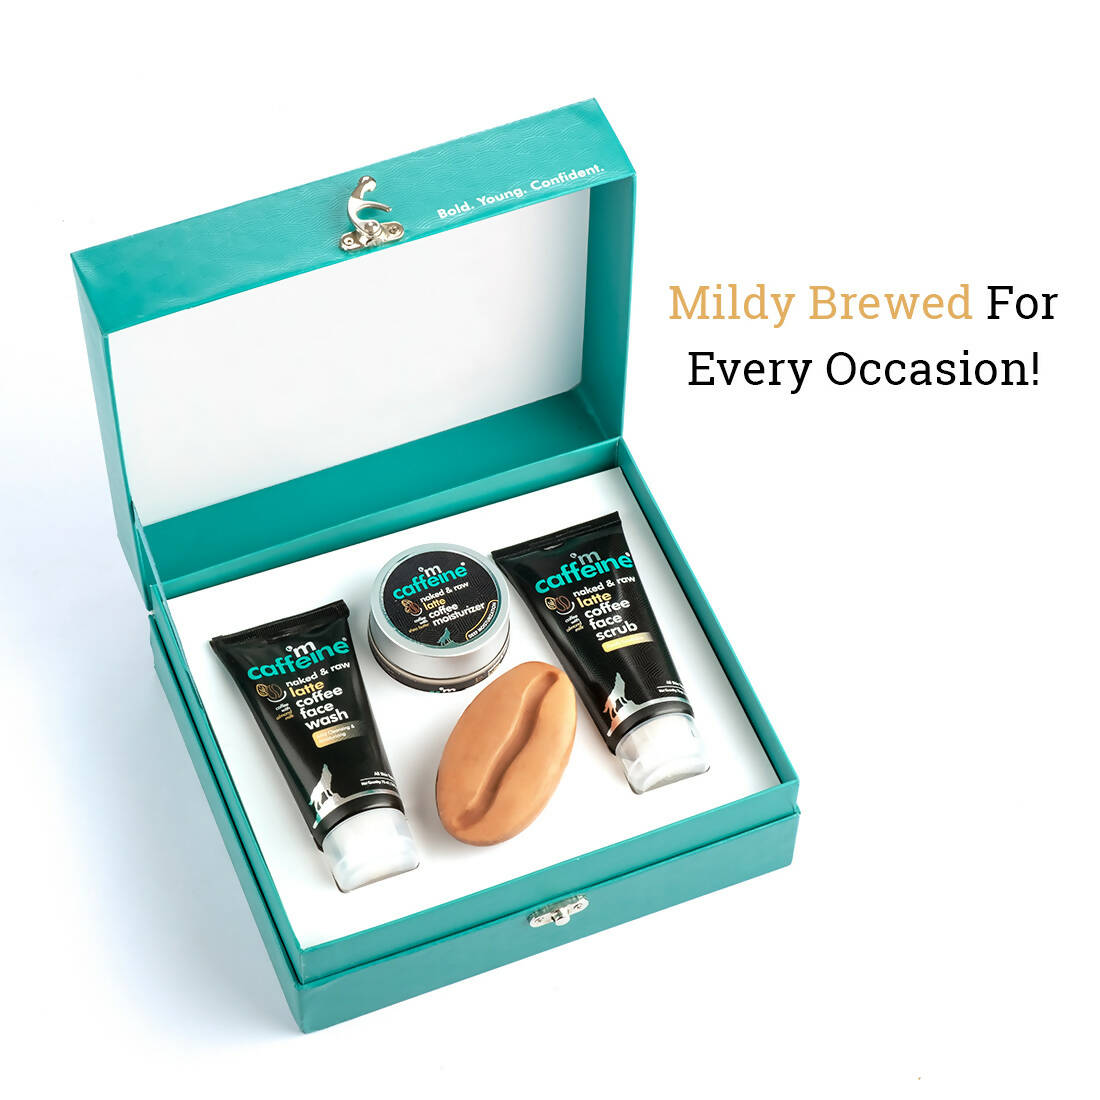 mCaffeine Mild Brew - Latte Gift Kit - Distacart